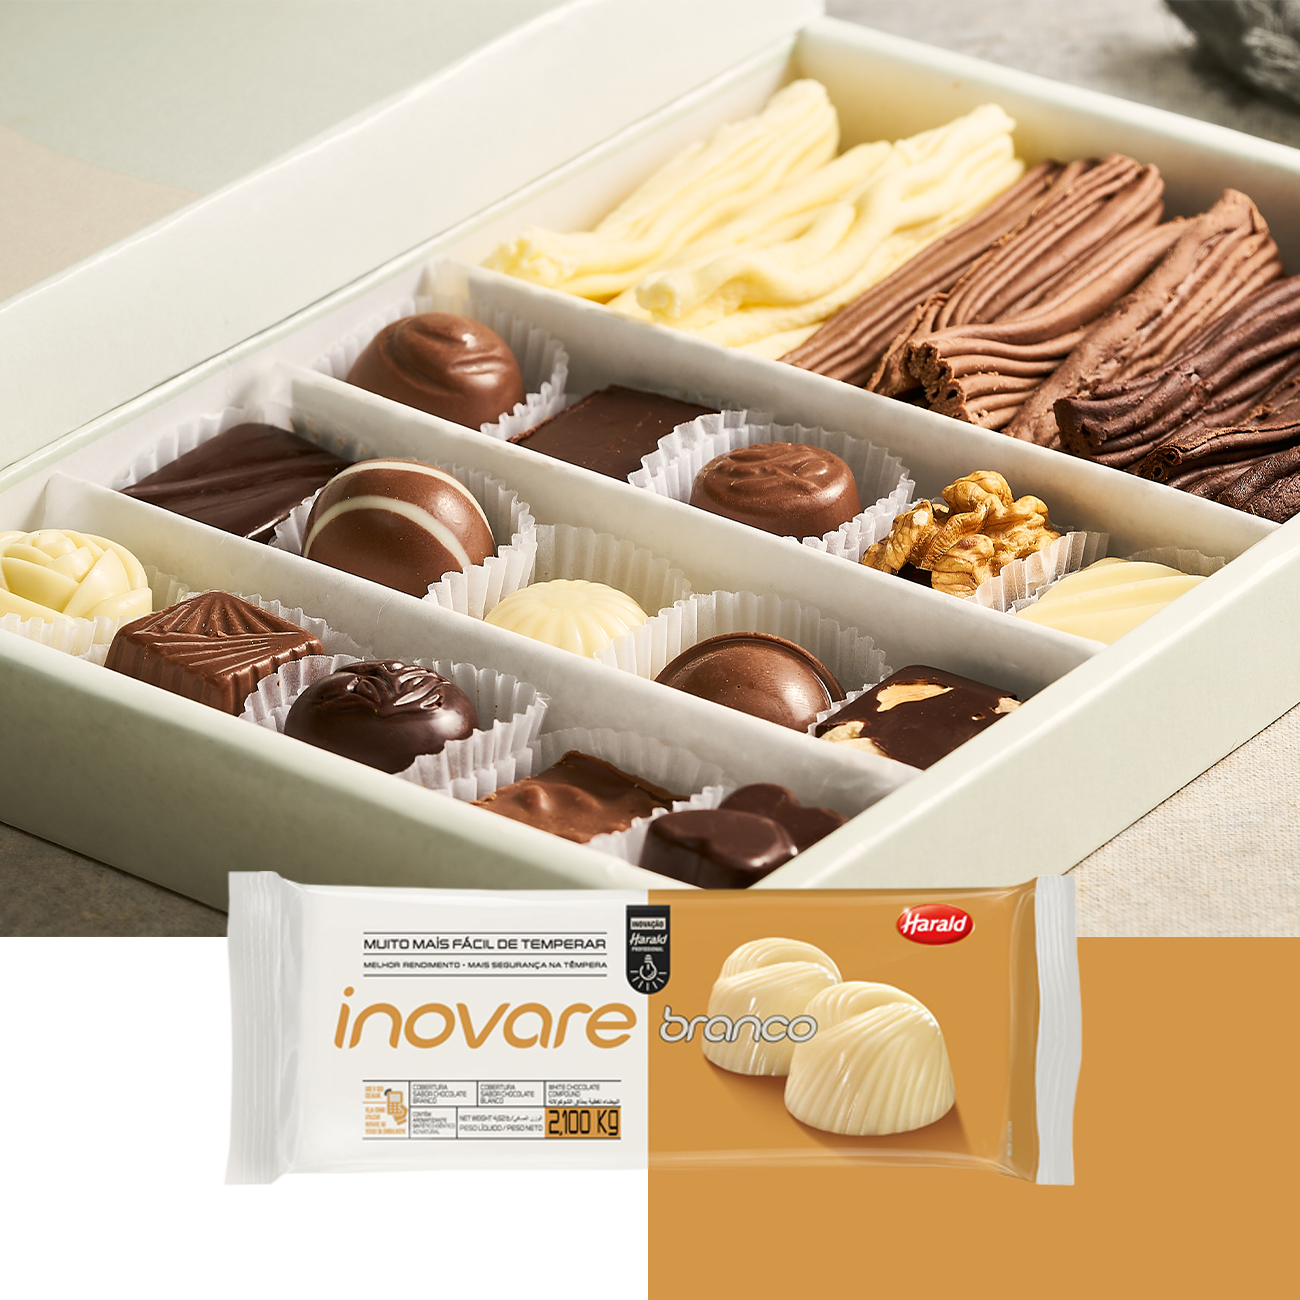 Cobertura de Chocolate em Barra Harald Inovare Branco 2,1kg